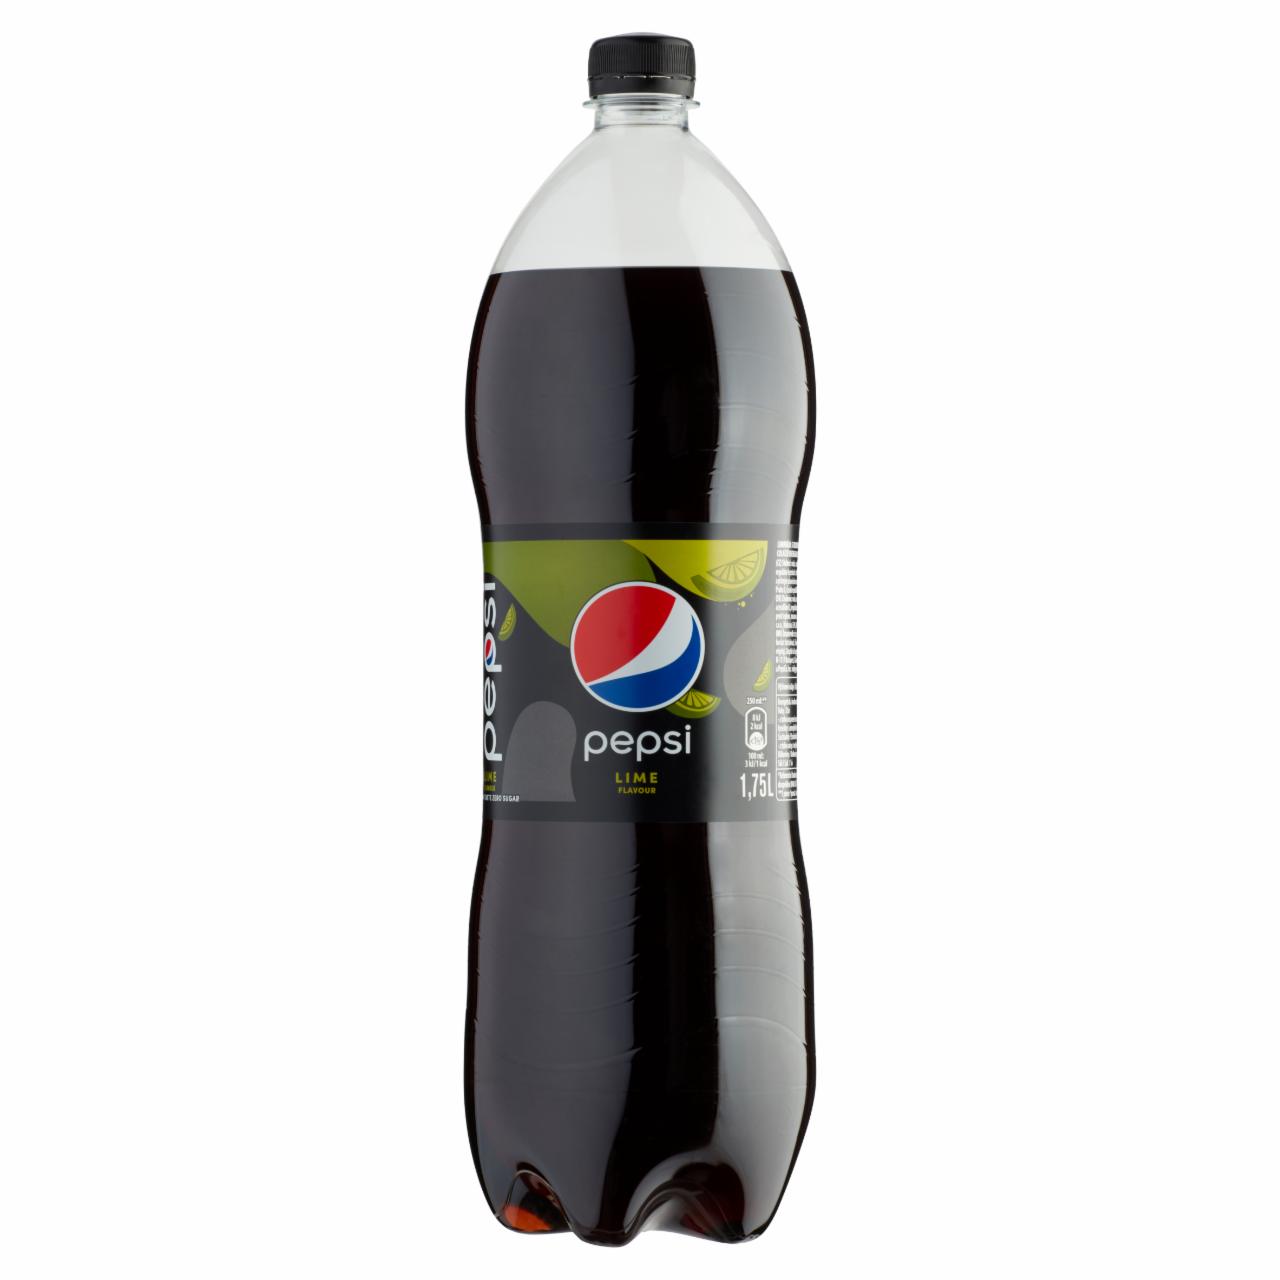 Képek - Pepsi Lime colaízű energiamentes szénsavas üdítőital édesítőszerekkel lime ízesítéssel 1,75 l